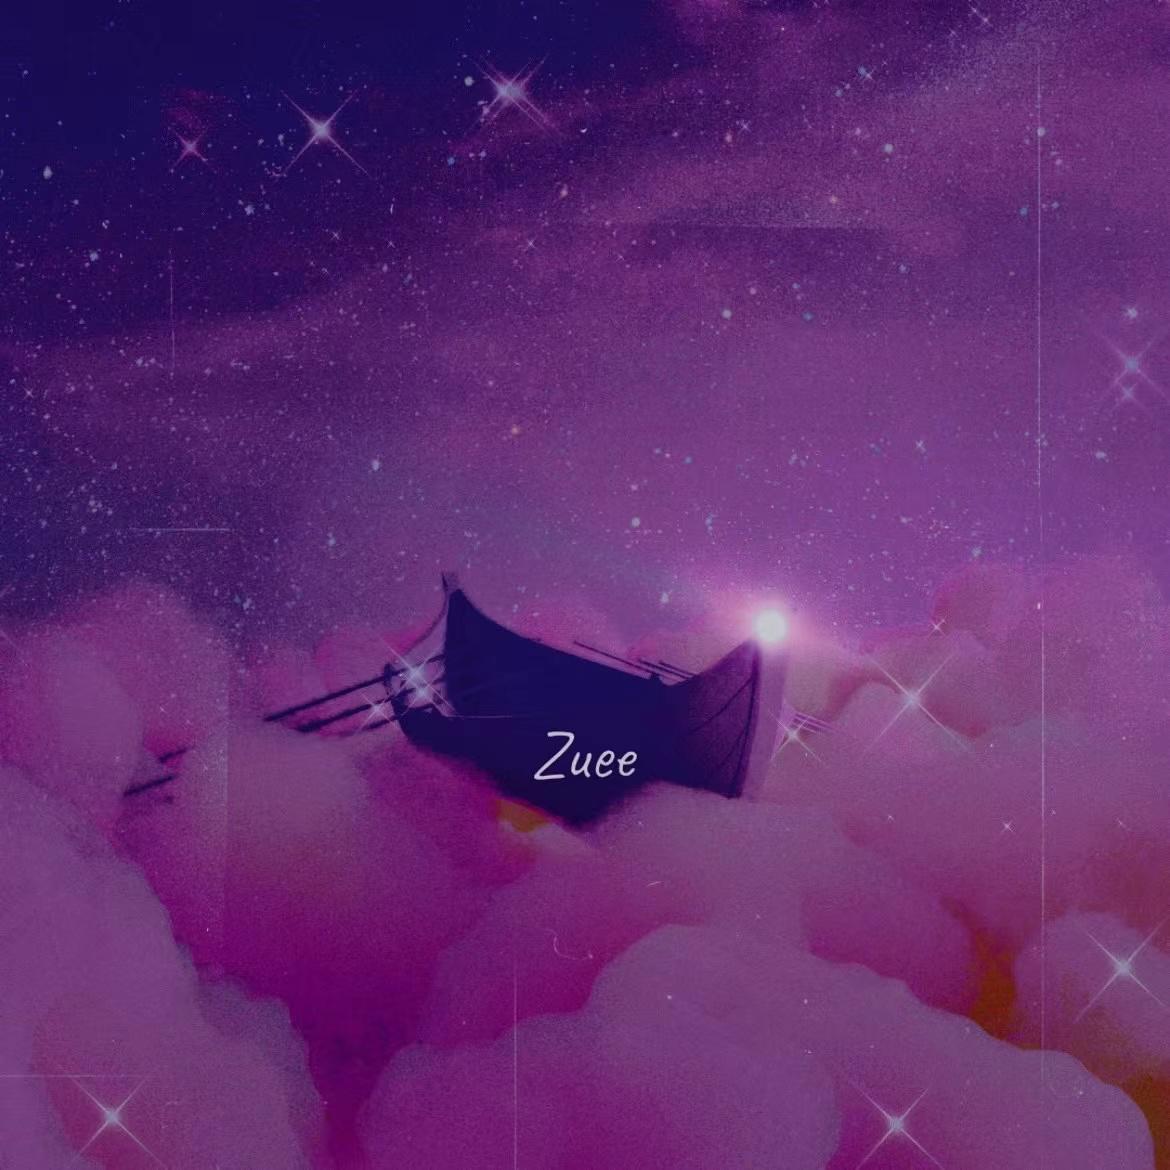 感性动物歌词 歌手Zuee-专辑感性动物-单曲《感性动物》LRC歌词下载